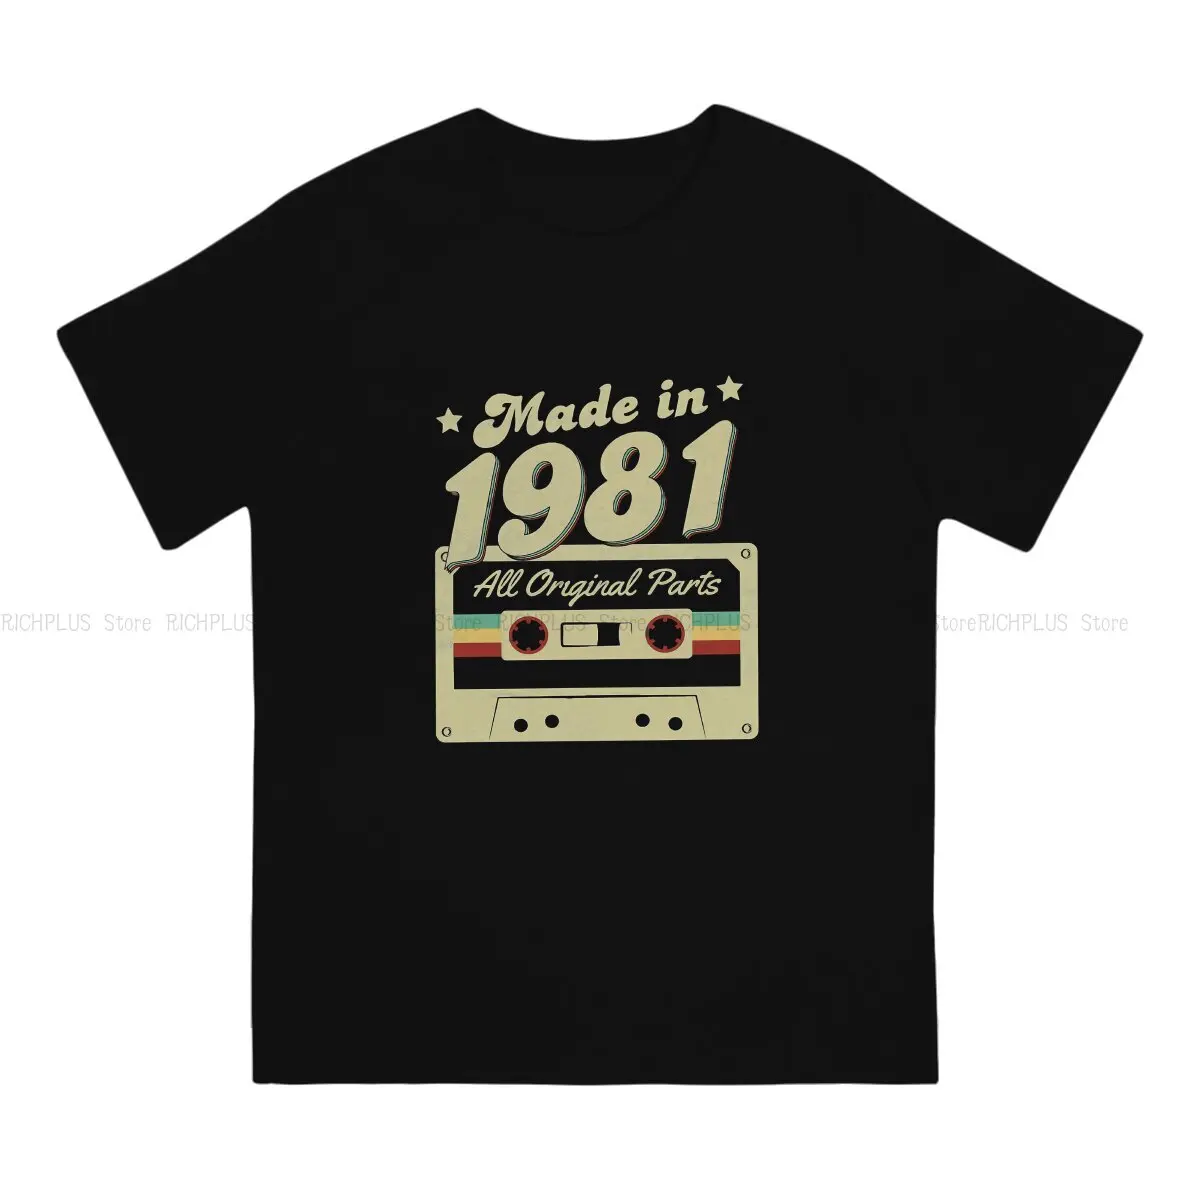 Сделано в 1981 Году, футболка в стиле ретро в стиле хип-хоп 1981, Футболка для отдыха, Летние вещи Для мужчин И Женщин - 1